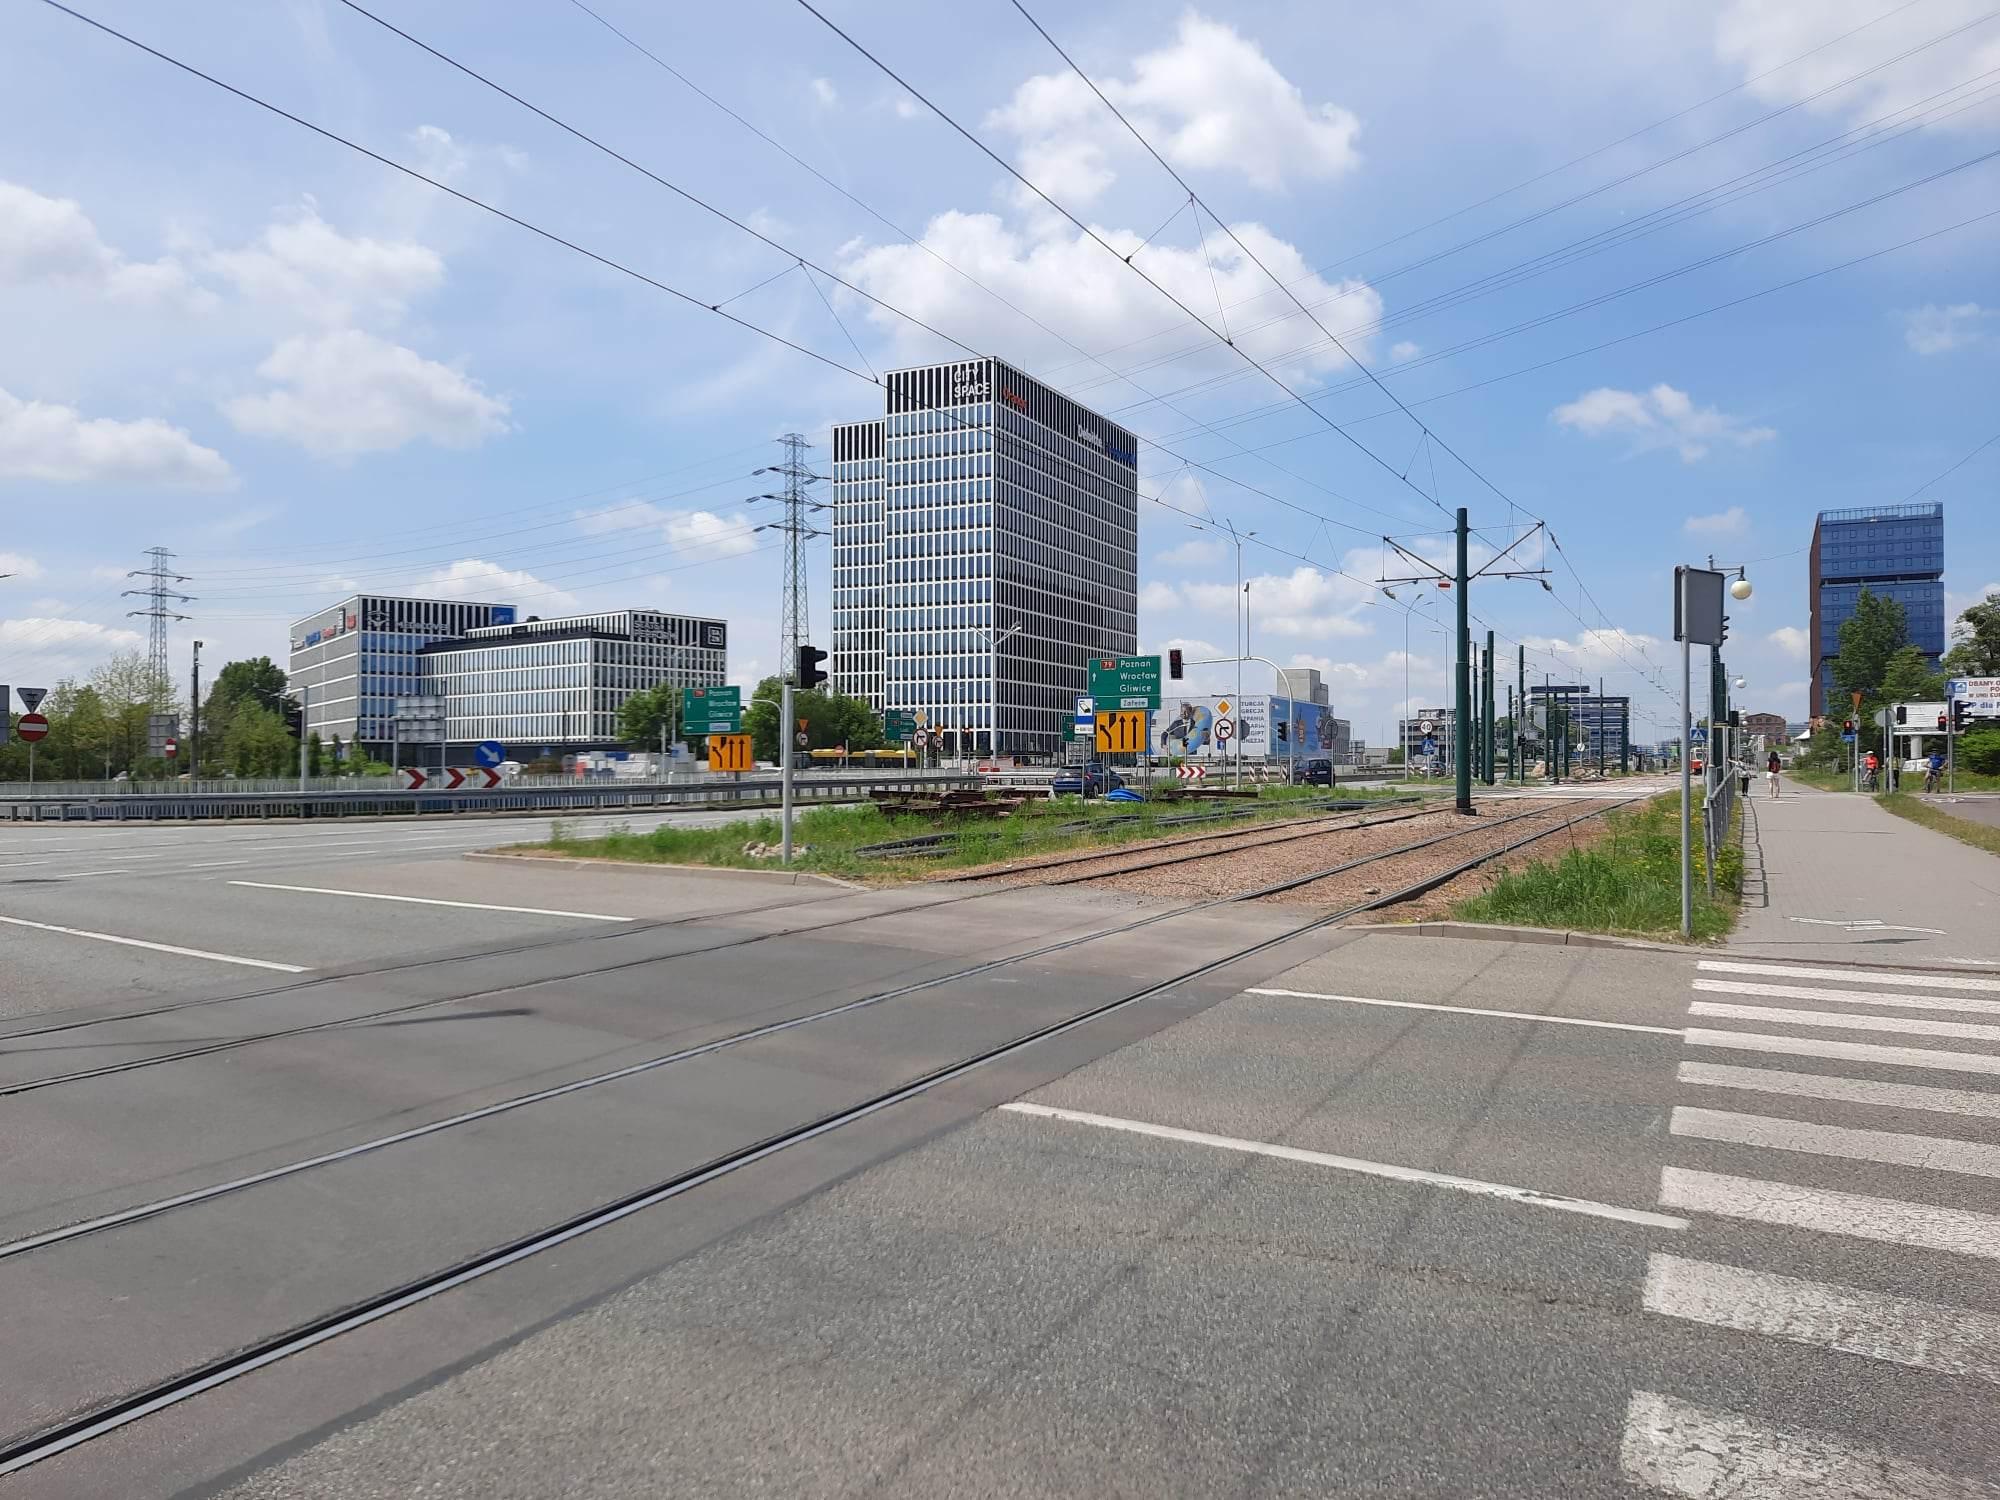 Budowa wiadukt tramwaj chorzowska grundmanna katowice 05